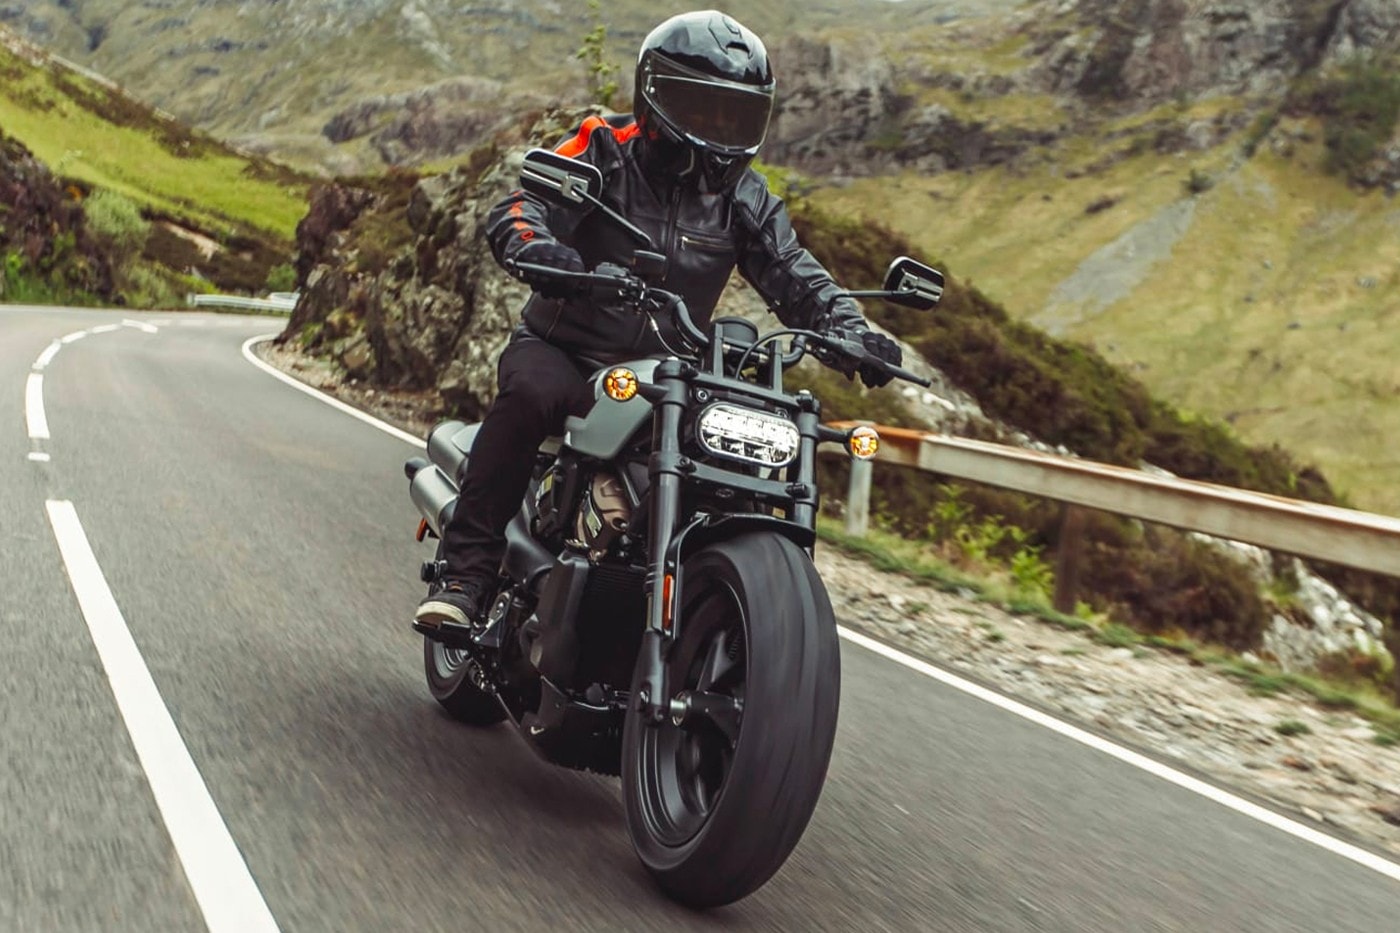 Harley Davidson 發表全新 2021 Sportster S 車款